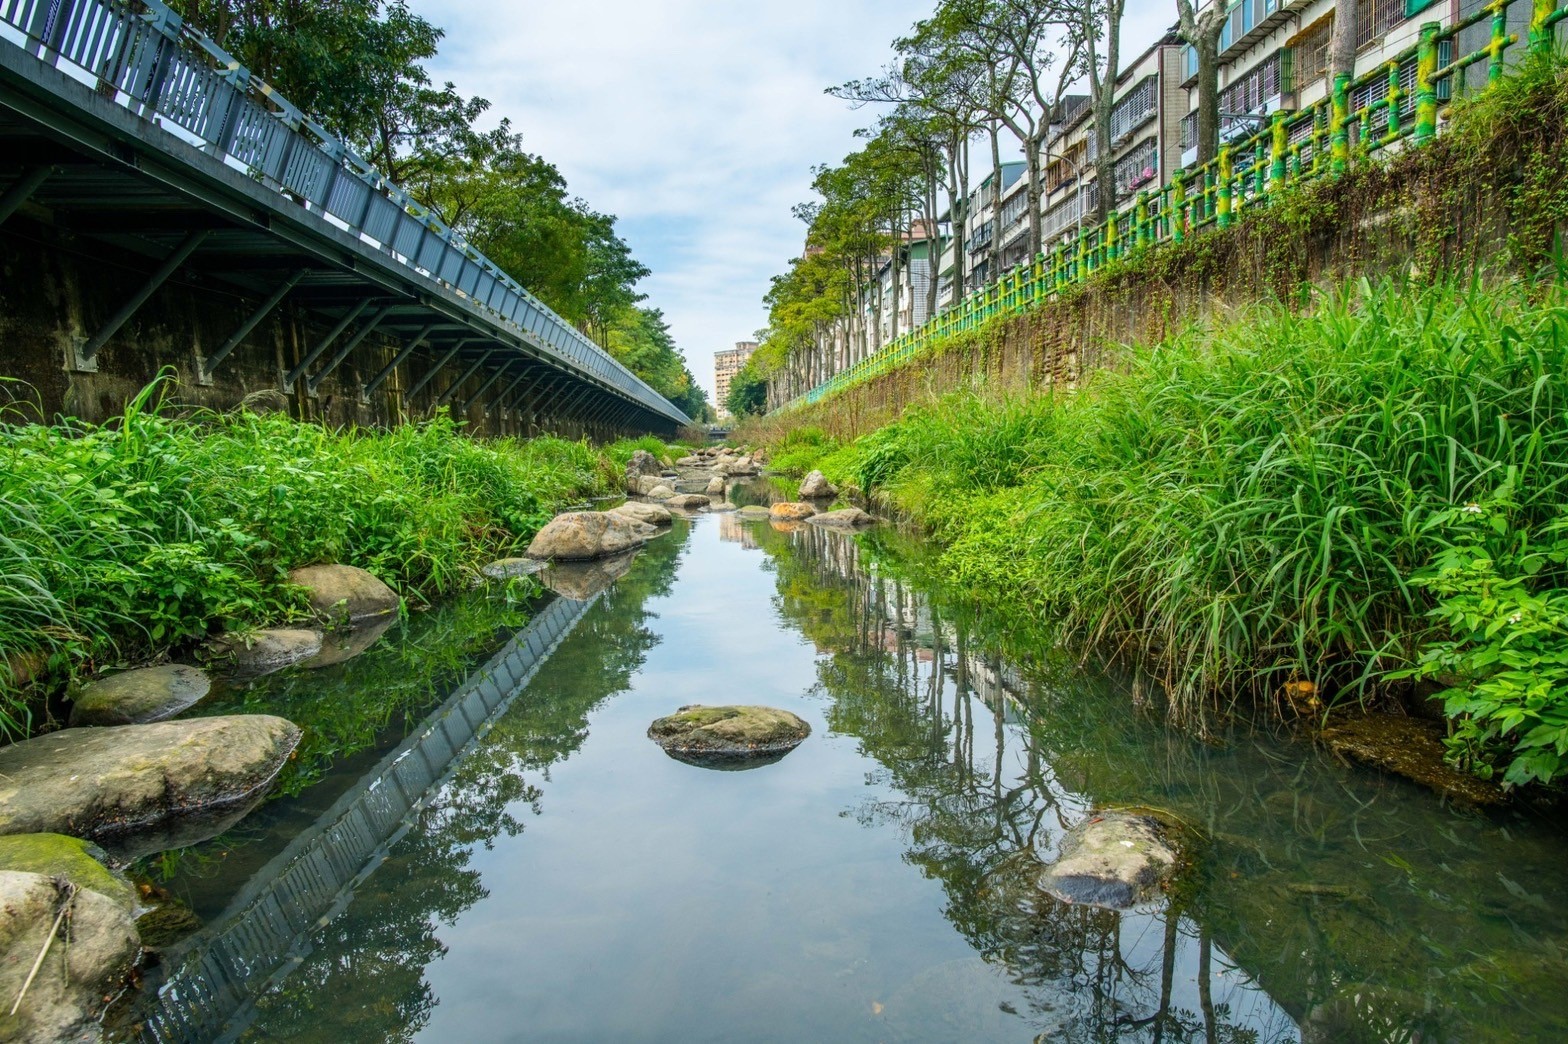 藤寮坑溝一期水環境營造計畫後，河道已轉變成綠意盎然、充滿豐富植生的近自然溪流，獲得地方好評且榮獲諸多獎項。